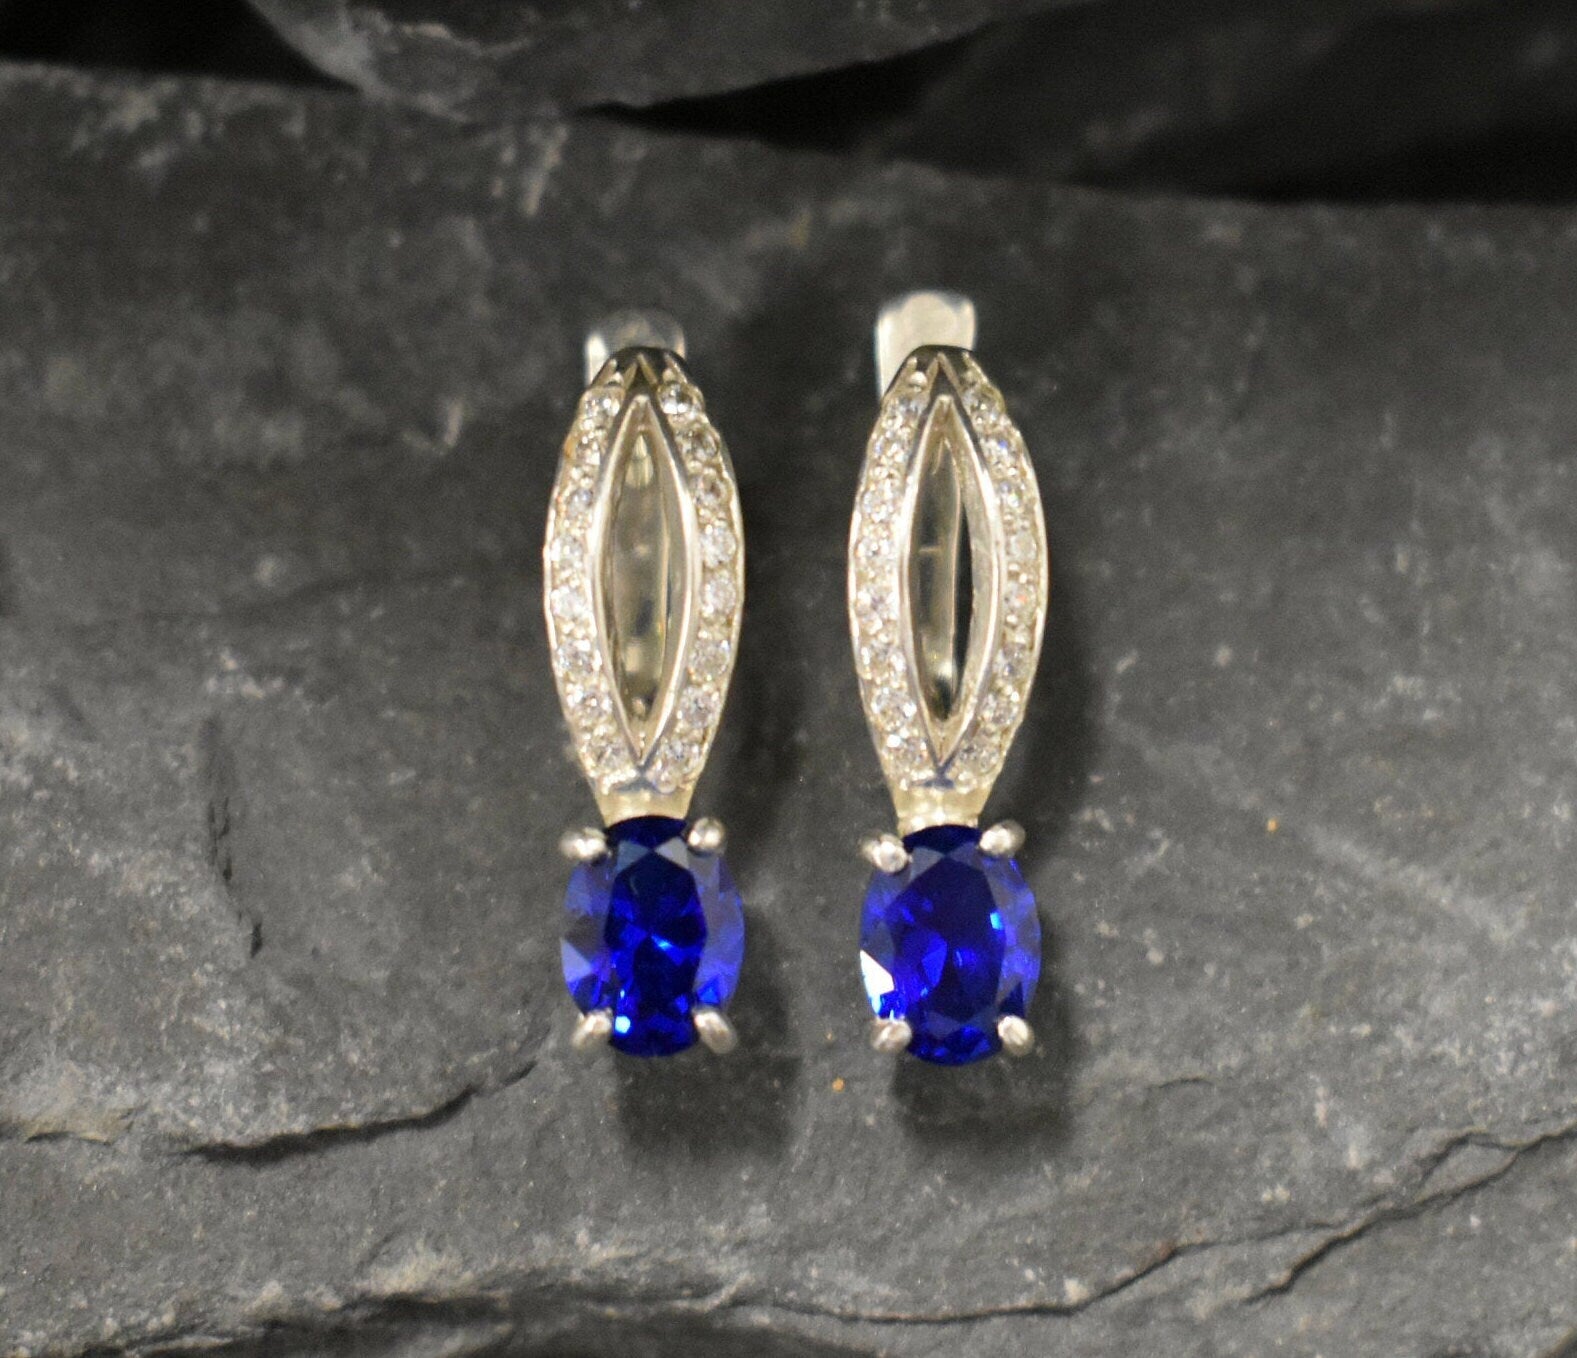 Blue Sapphire Earrings - Long Drop Earrings, Blue Vintage Earrings